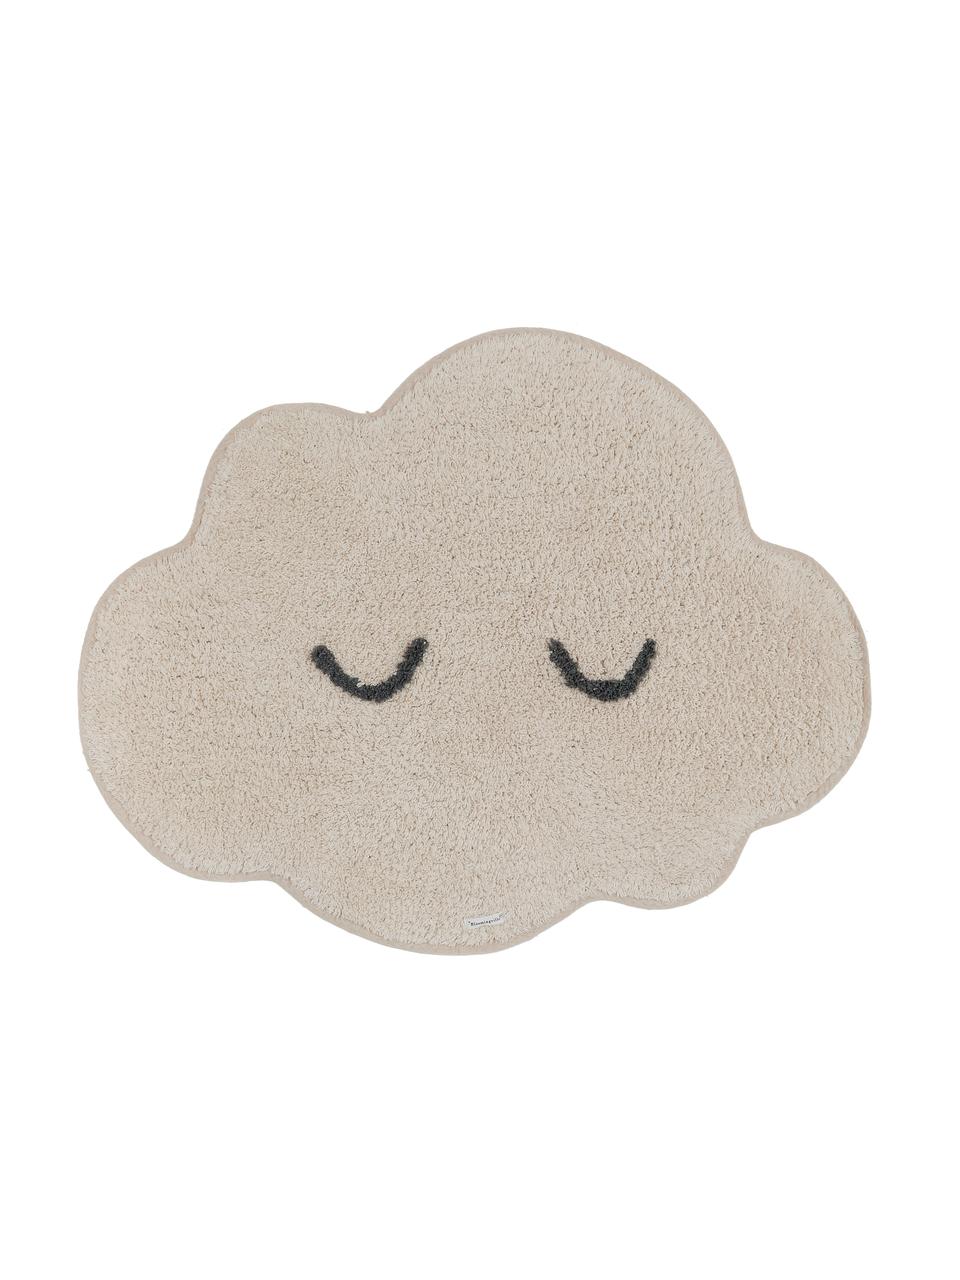 Teppich Cloud aus Bio-Baumwolle, Baumwolle, Beige, B 57 x L 82 cm